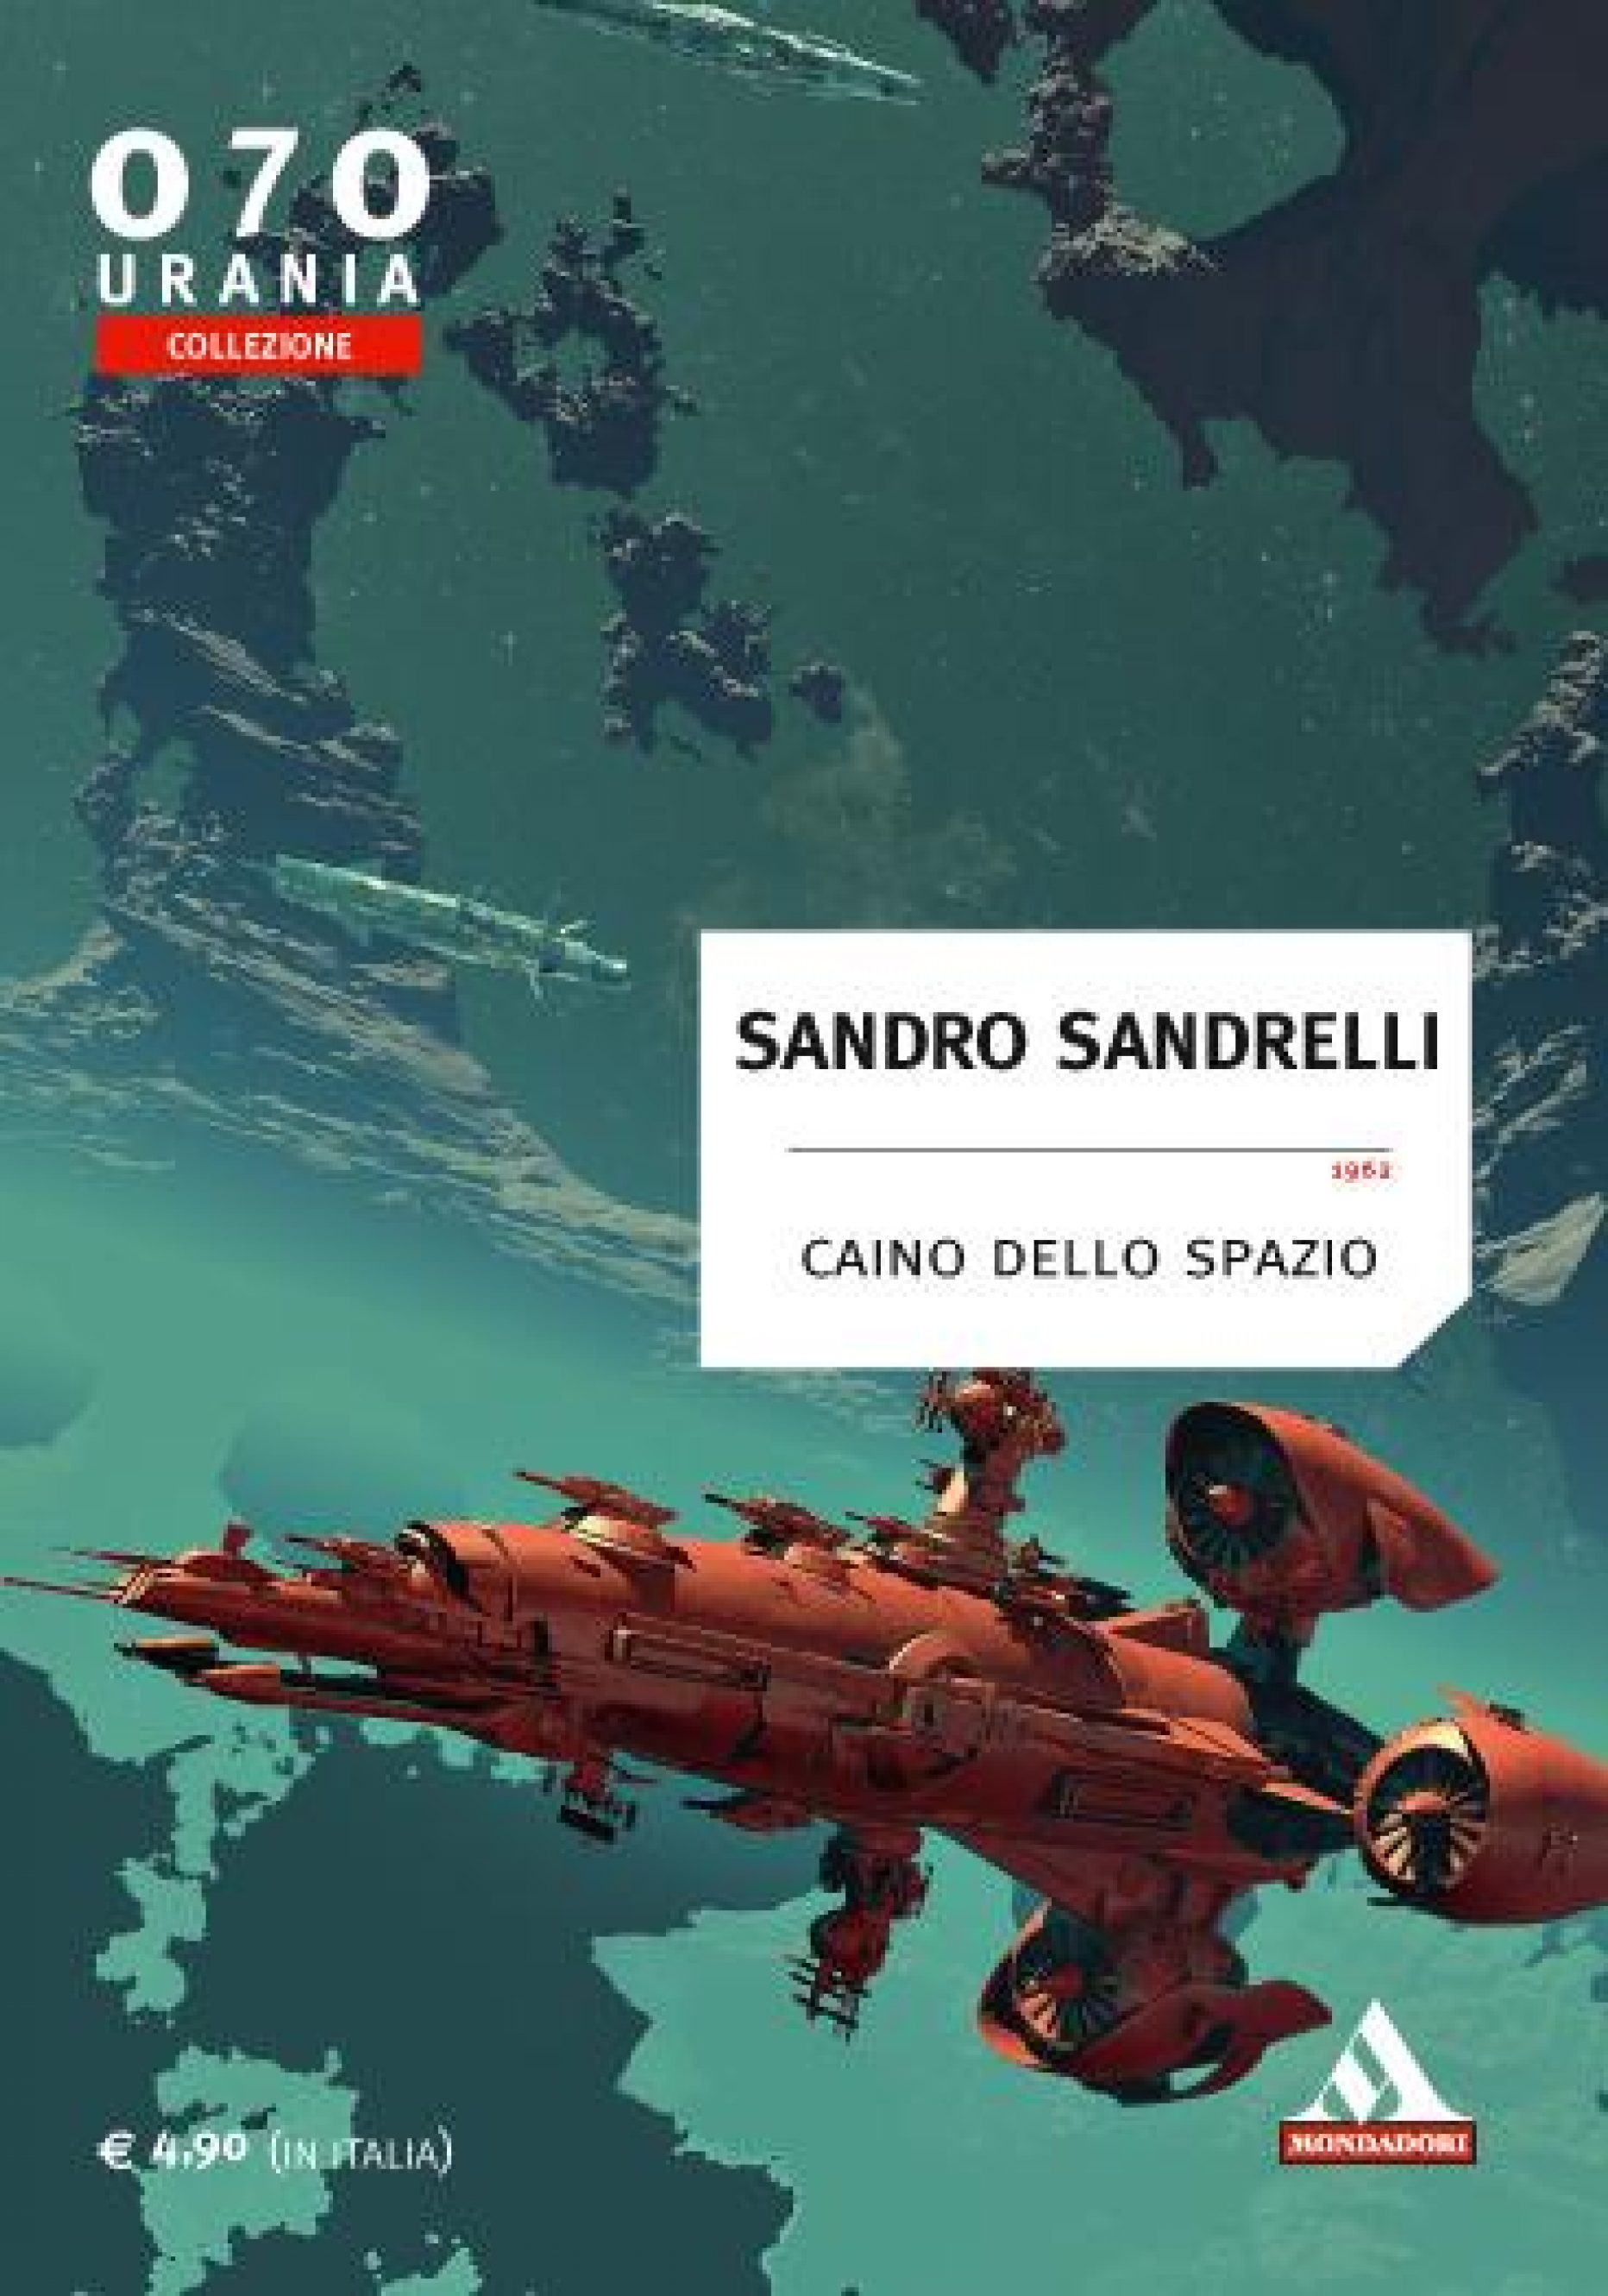 Sandro Sandrelli – Caino dello Spazio